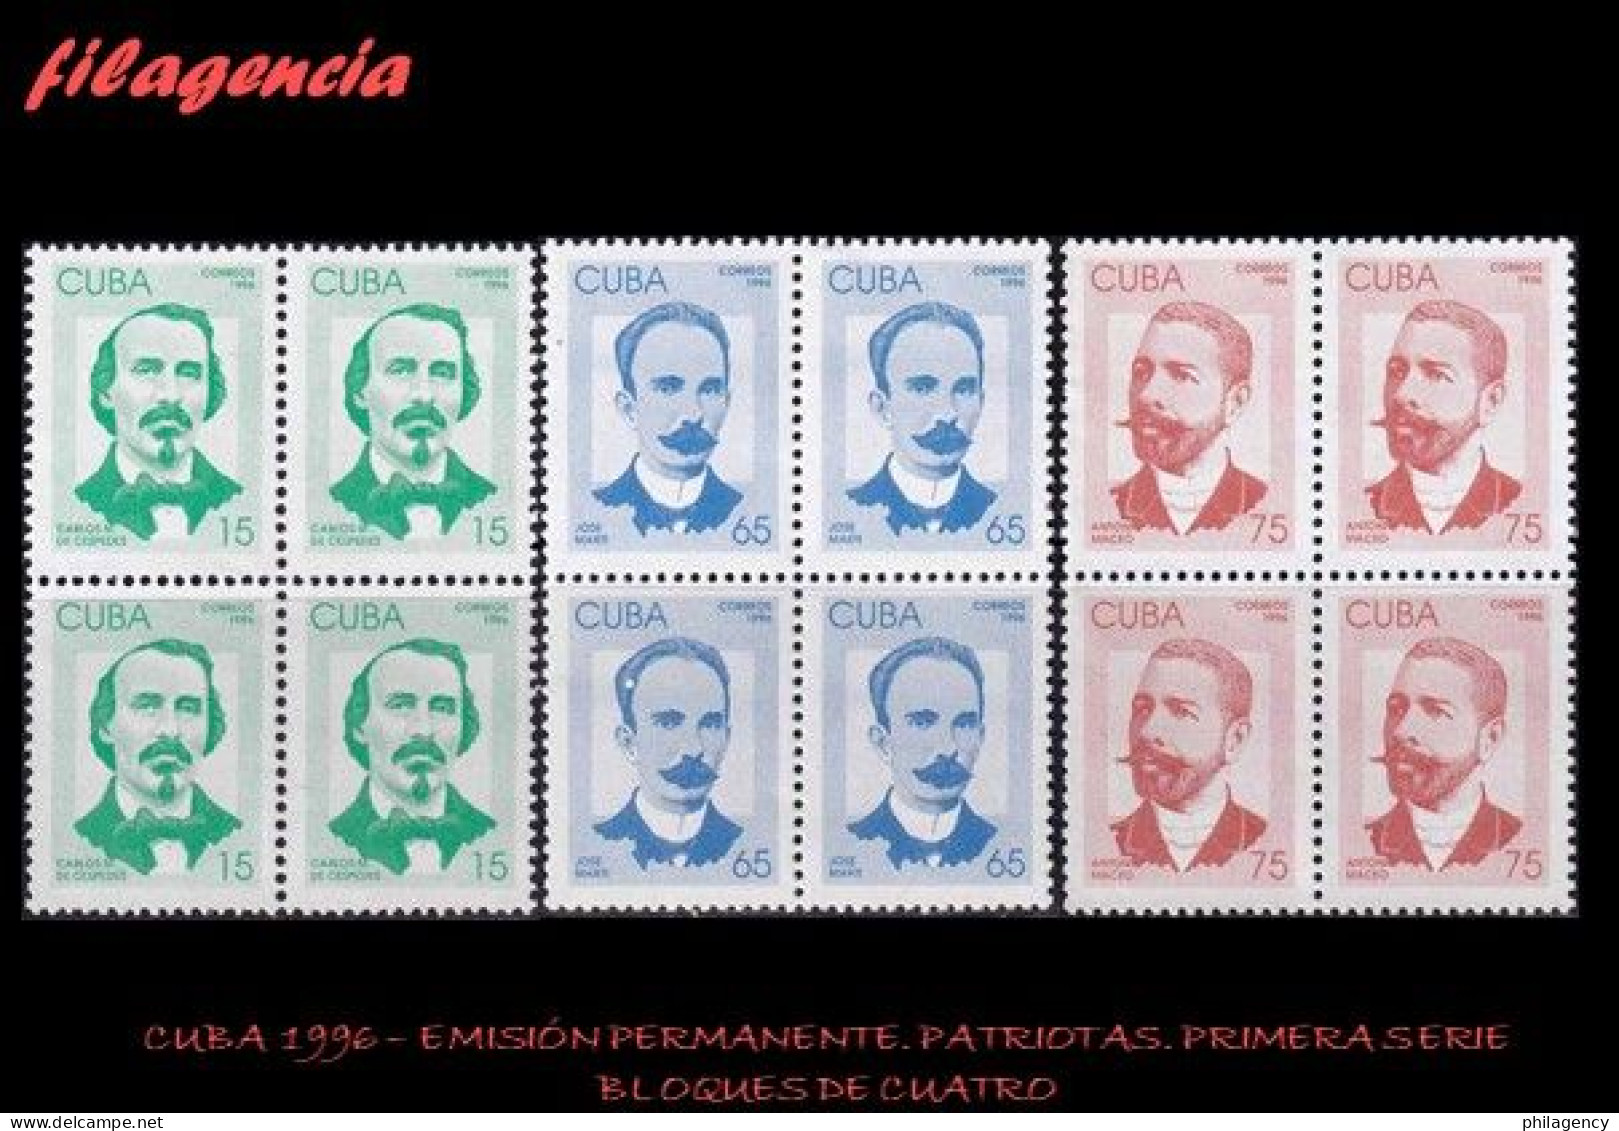 CUBA. BLOQUES DE CUATRO. 1996-01 EMISIÓN PERMANENTE. PATRIOTAS CUBANOS. PRIMERA SERIE - Nuevos